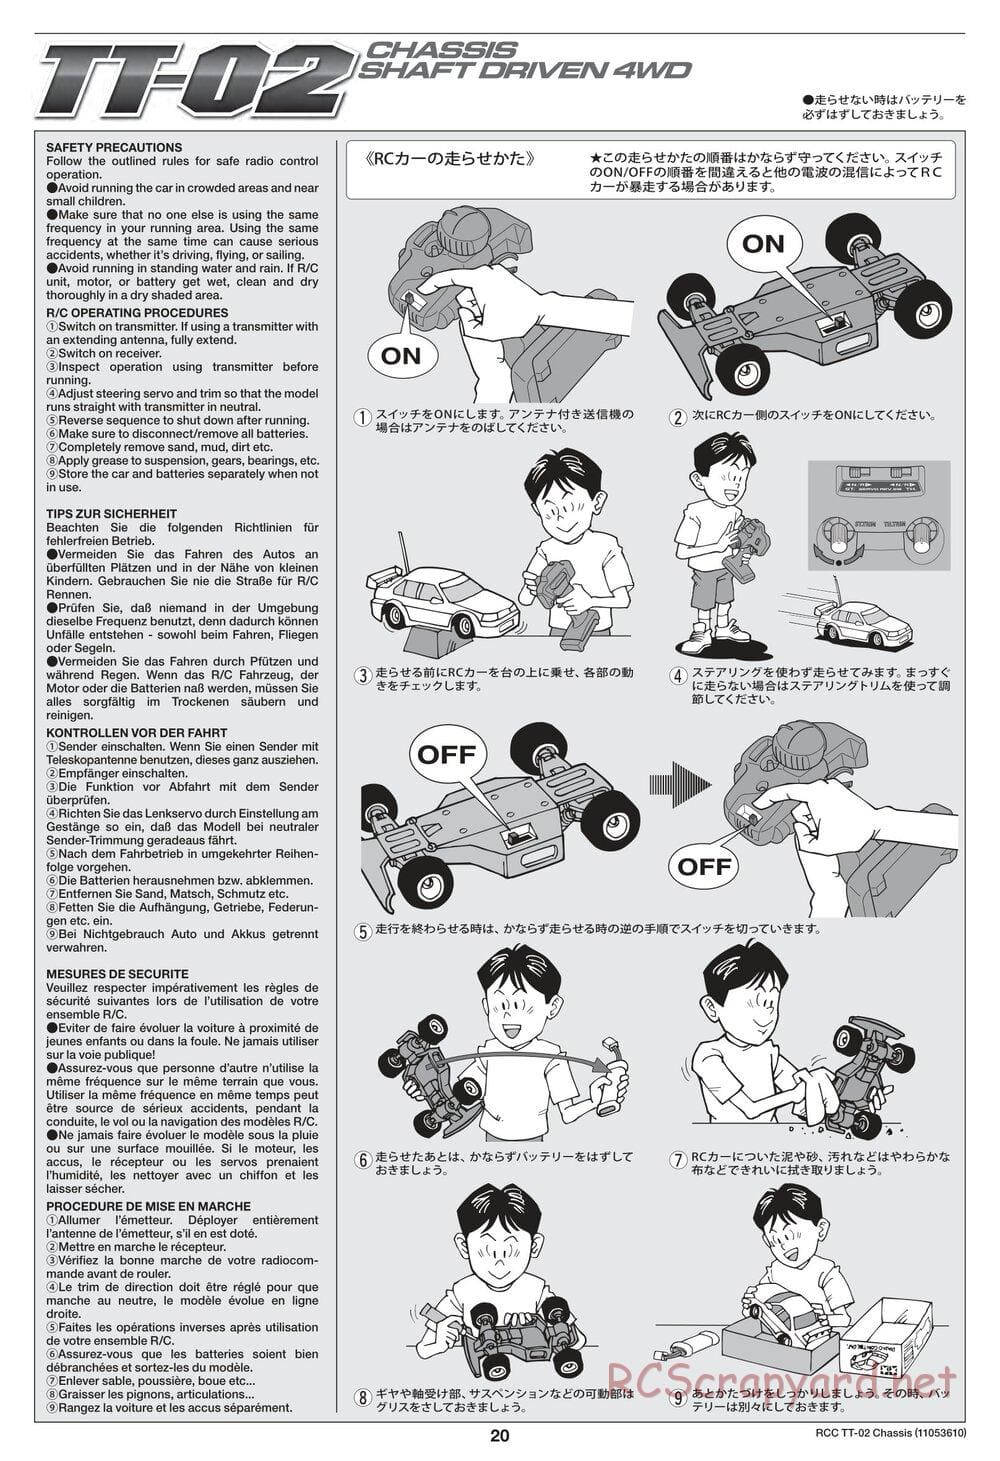 Tamiya - TT-02 Chassis - Manual - Page 20